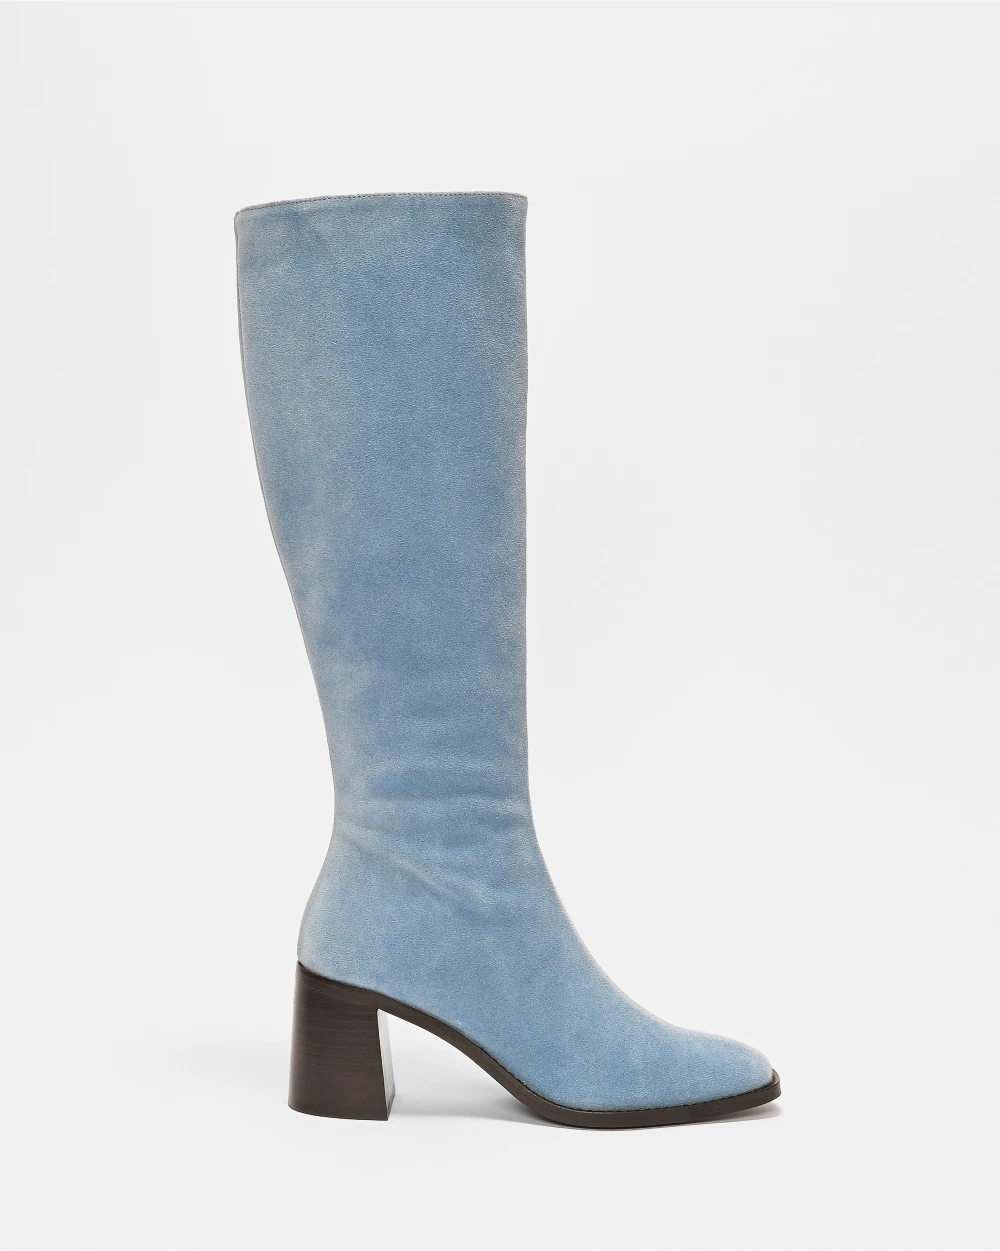 CRISTOBAL les bottes à talons épais au style retro et cuir d'exception upcyclé daim bleu ciel.